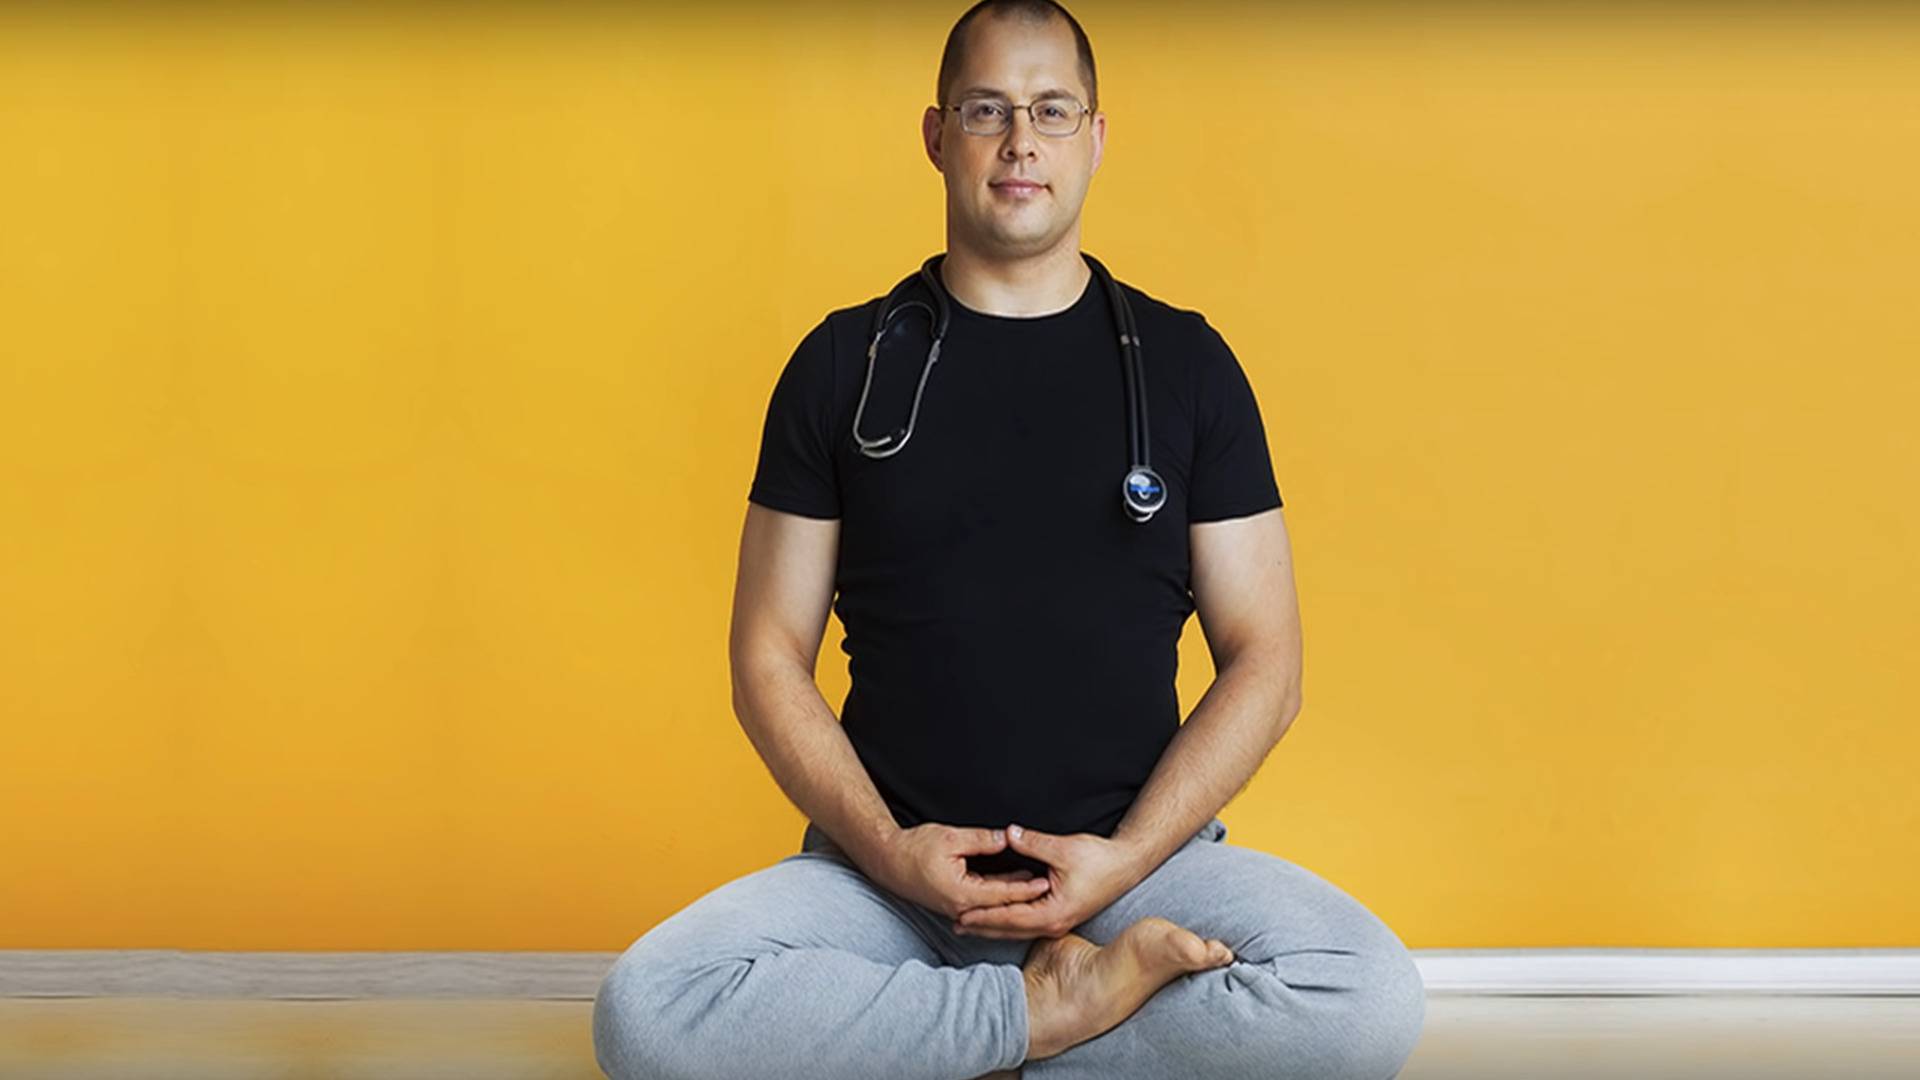 Агапкин и его философия йоги — воздействие на подсознание и способ улучшить здоровье